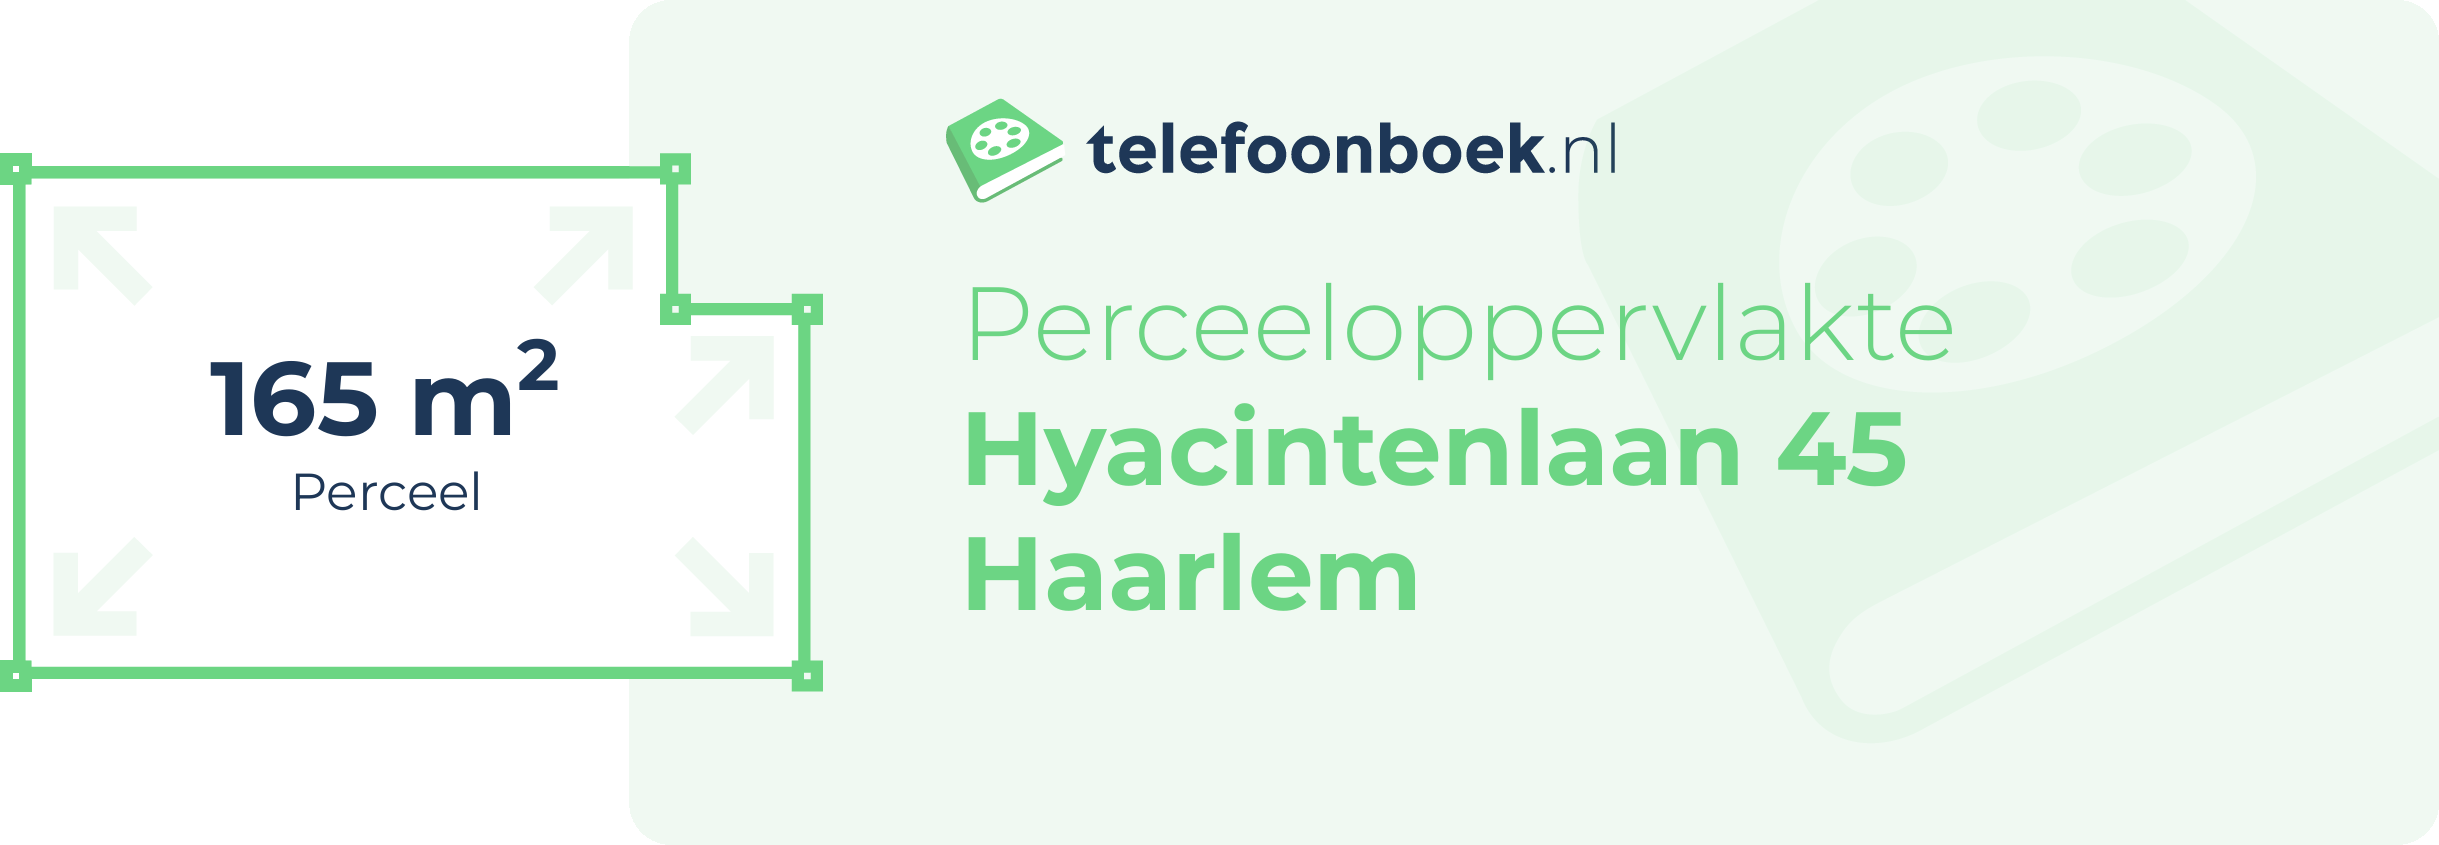 Perceeloppervlakte Hyacintenlaan 45 Haarlem